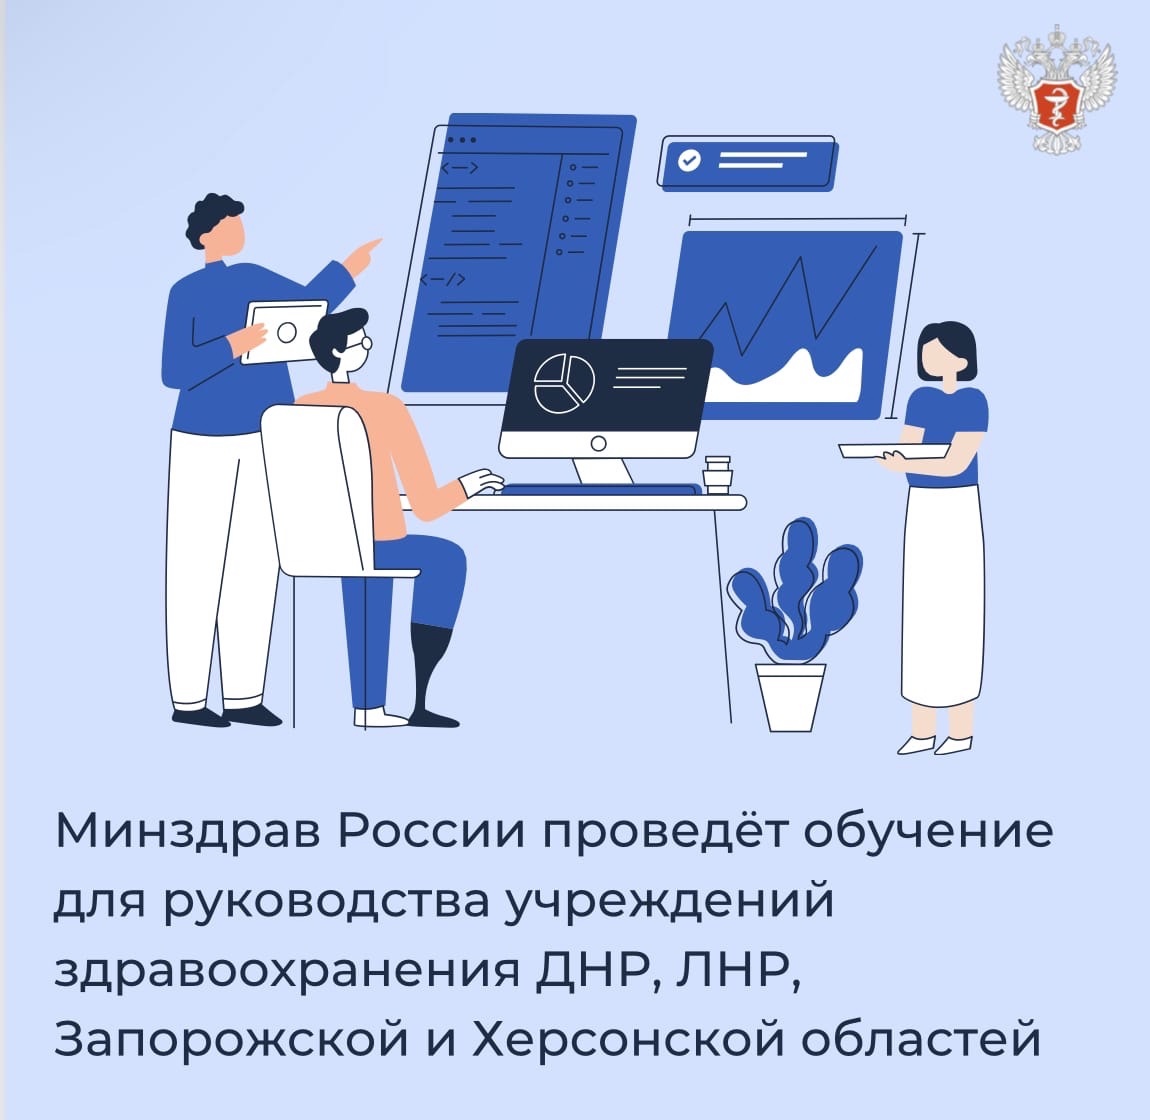 Минздрав России проведёт обучение для руководства учреждений здравоохранения ДНР, ЛНР, Запорожской и Херсонской областей